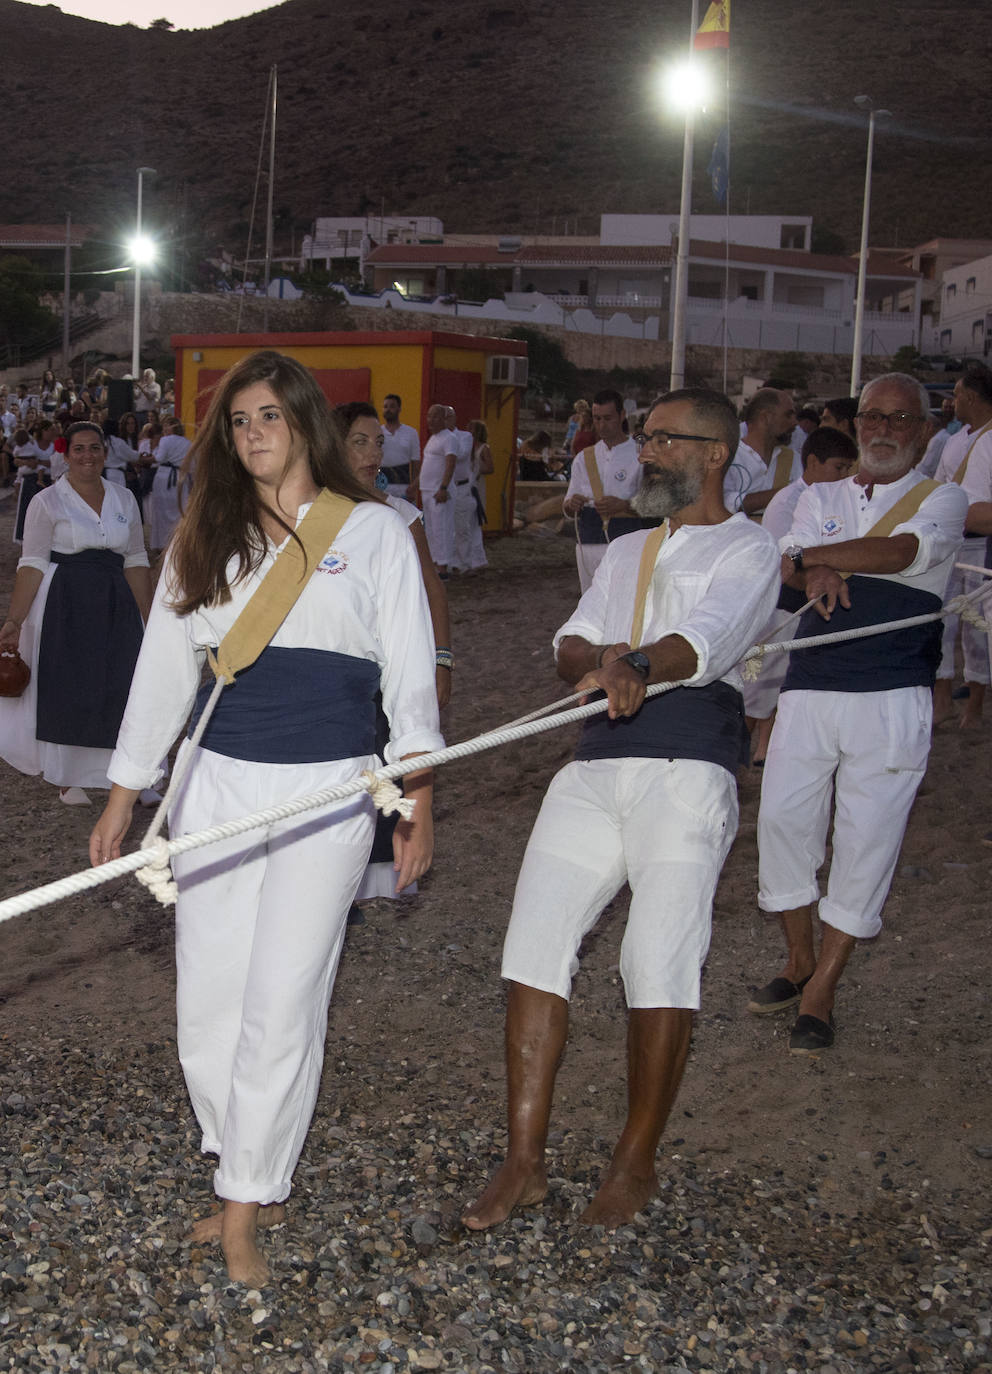 La playa de El Portús acogió el sábado una jornada marinera, que incluyó la recreación de la cala y recogida de la jábega